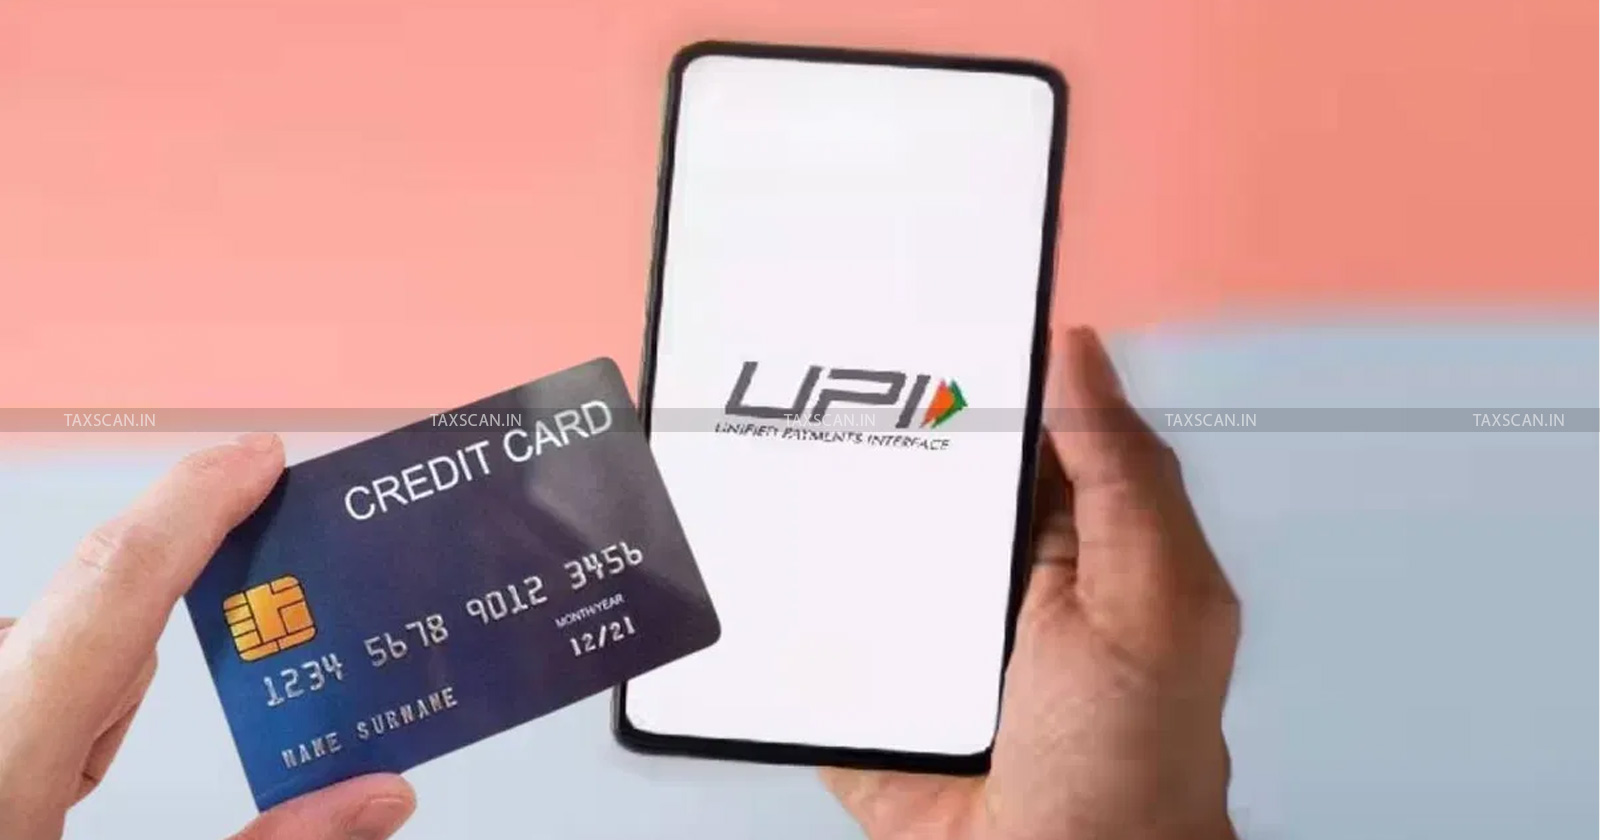 UPI - Credit Card - Bill Payment Limits - AFA Requirement - TAXSCAN